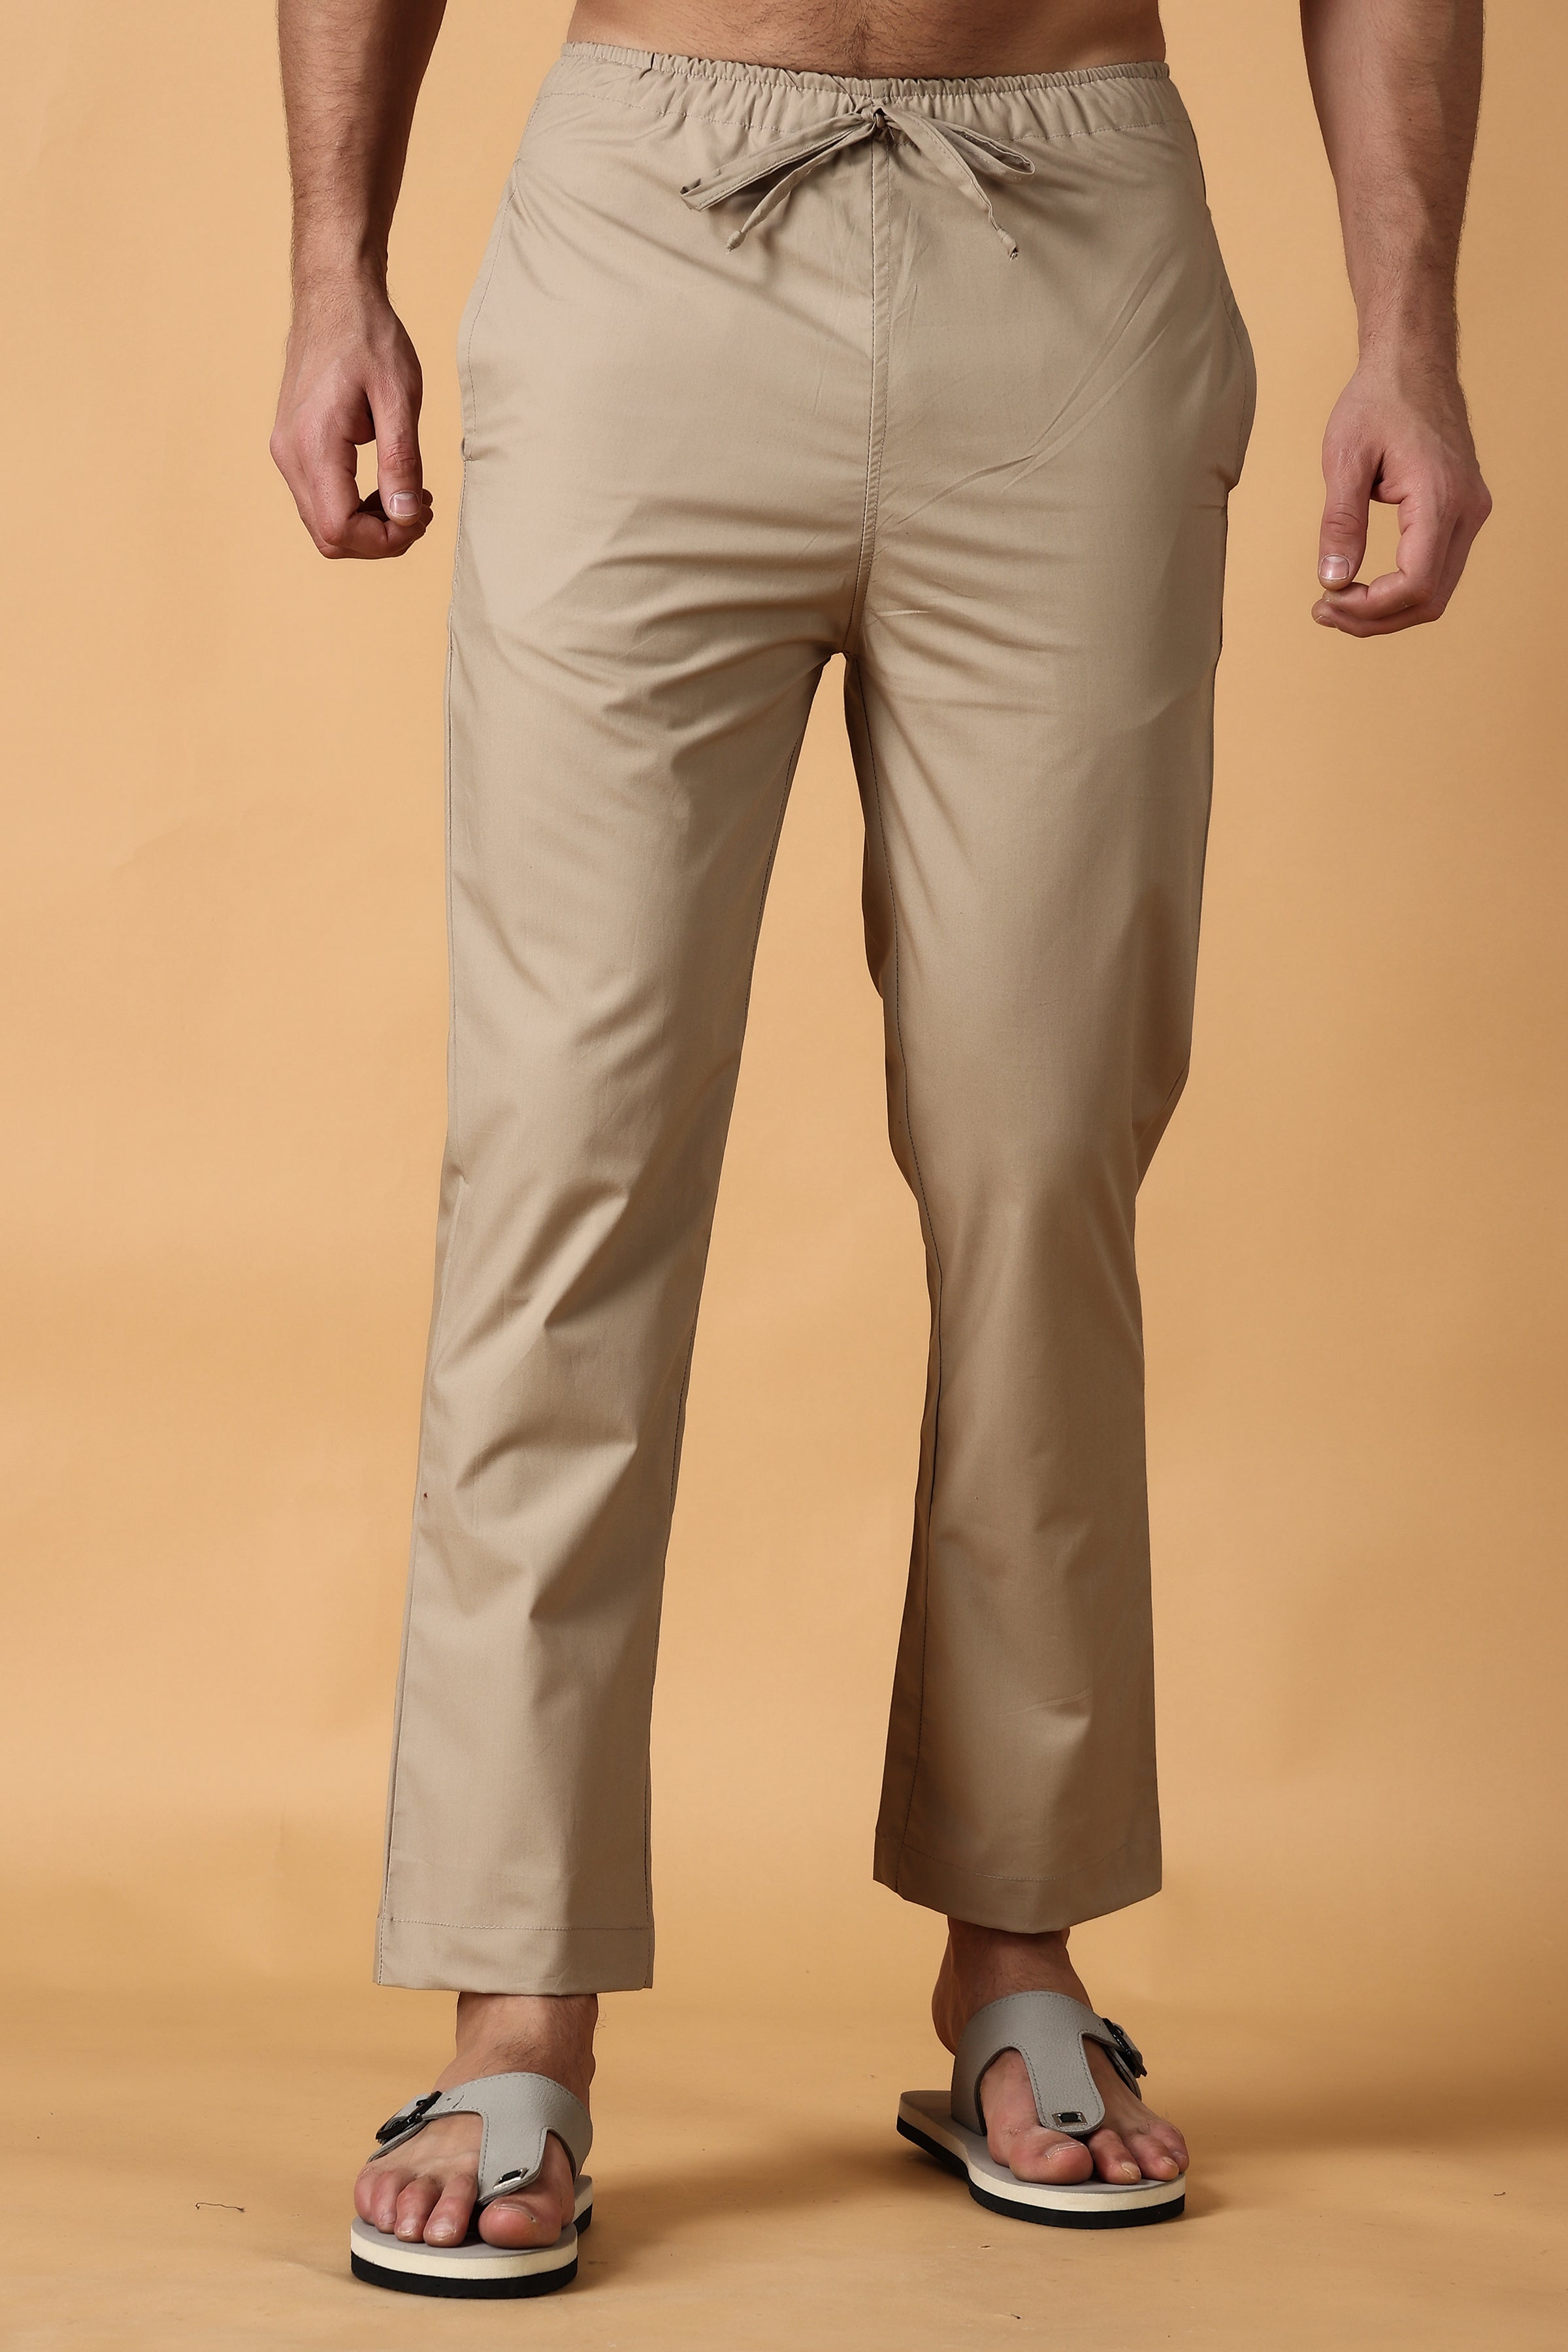 CASUAL TRENDS Mens Cotton Blend Solid Color Knit Pajama Pants -  PJPANTS-K0164 - Boytique %